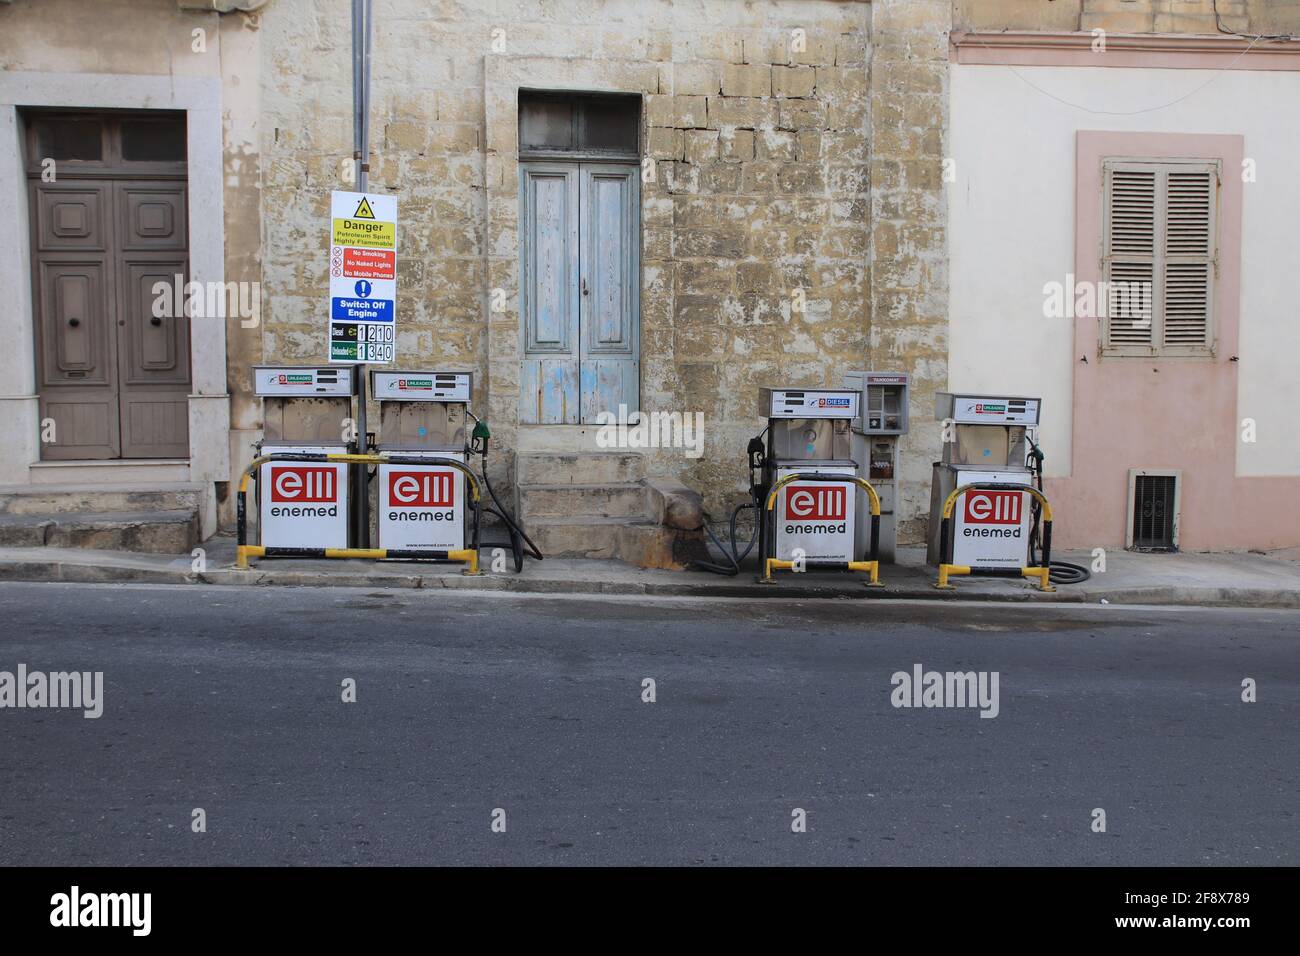 Valetta, Malta - October 22, 2020: Old working gas station on the street in Malta Stock Photo